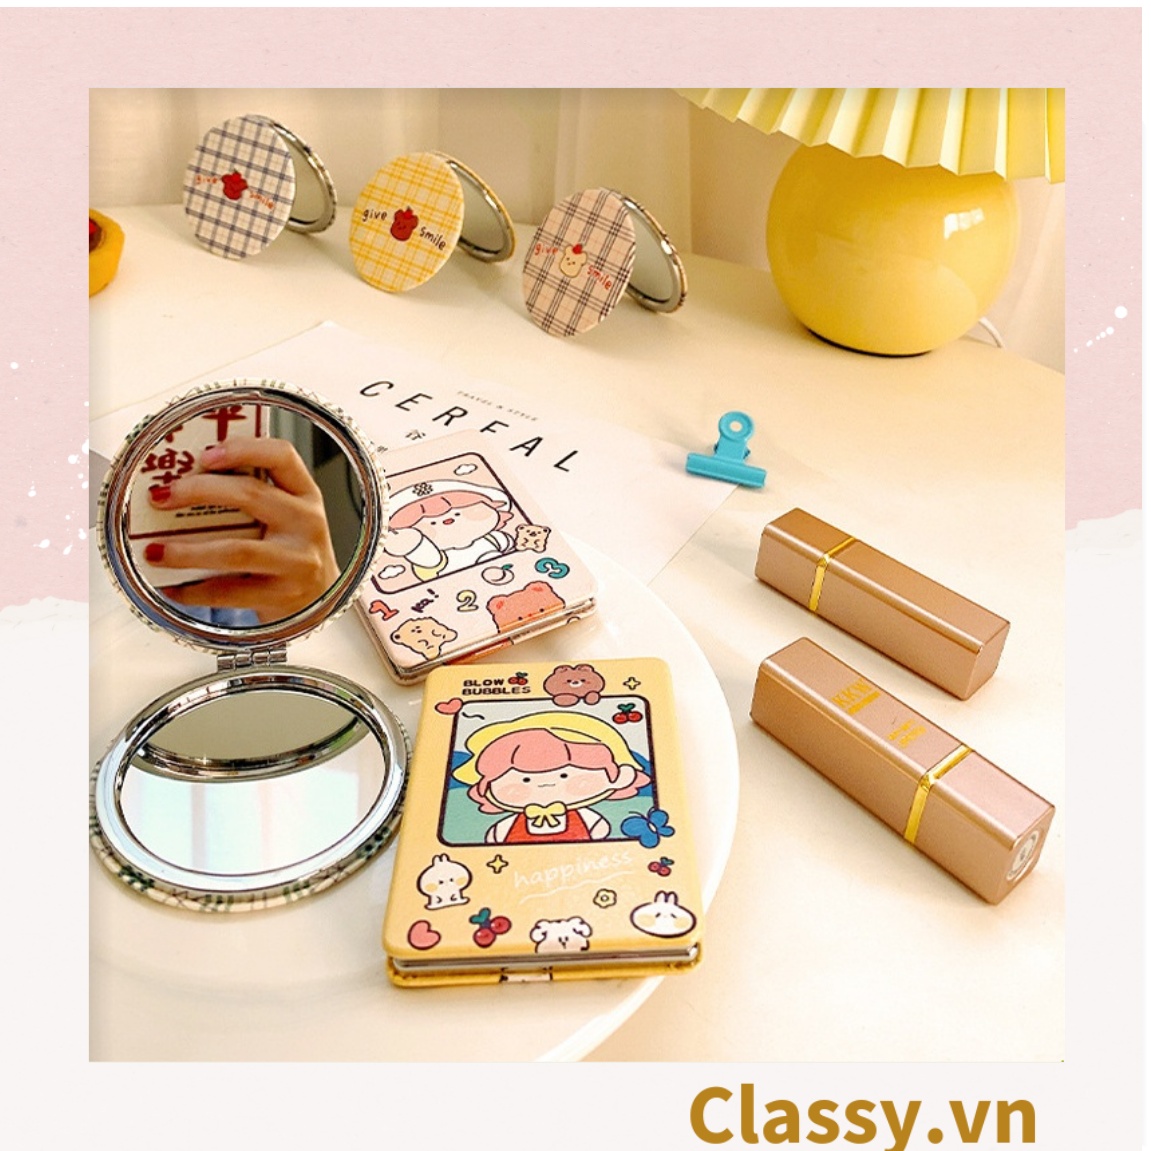 Gương trang điểm cầm tay mini 2 mặt bỏ túi, Gương cầm tay mini Hàn Quốc siêu cute, Gương hoạt hình PK570